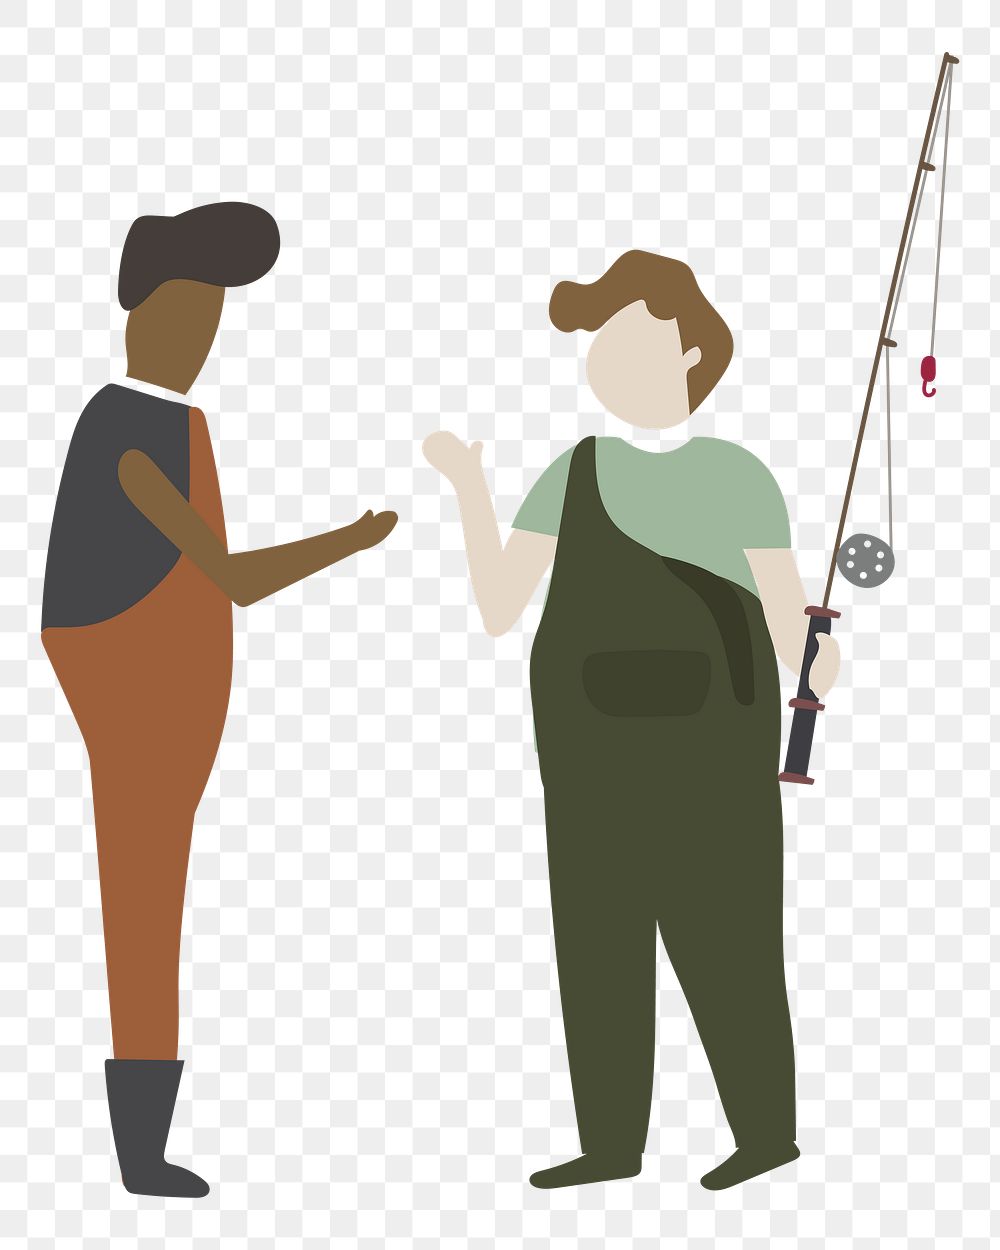 Fishing png illustration, transparent background